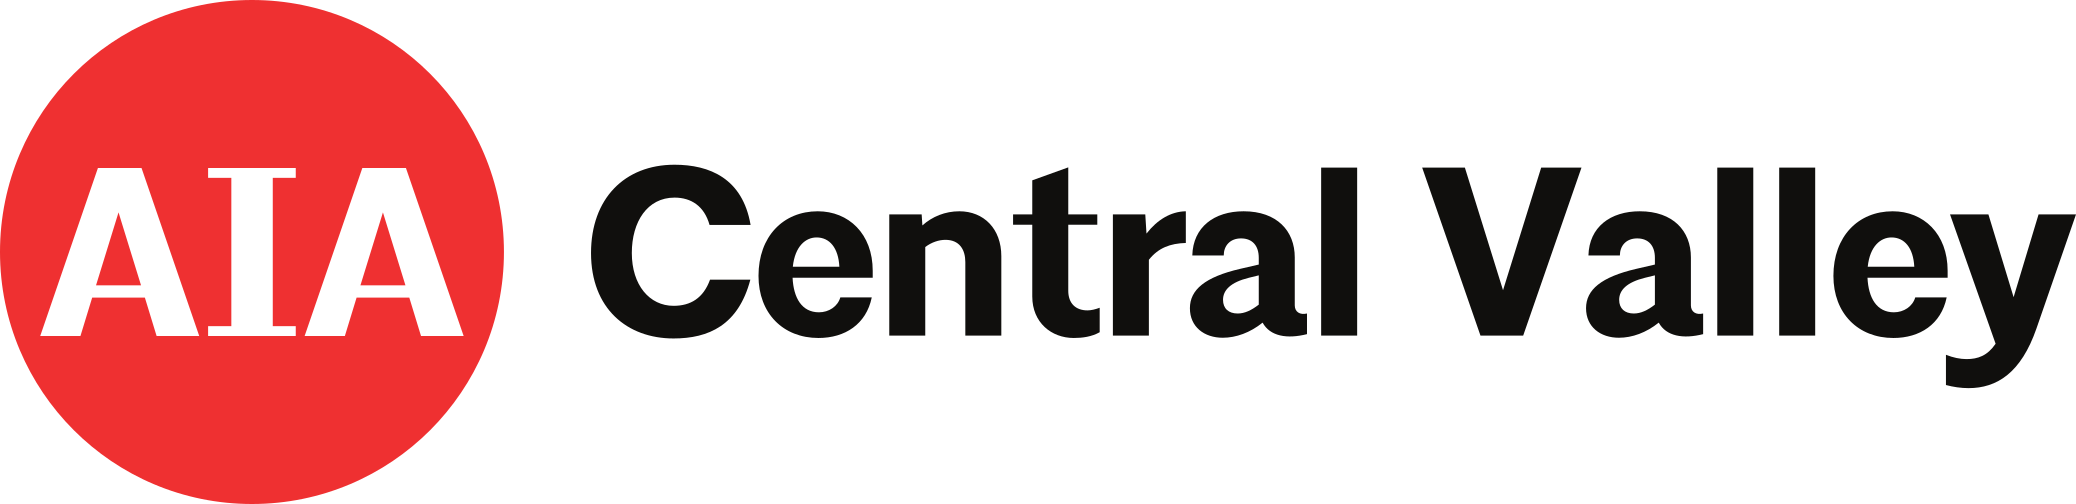 AIA Central Valley logo